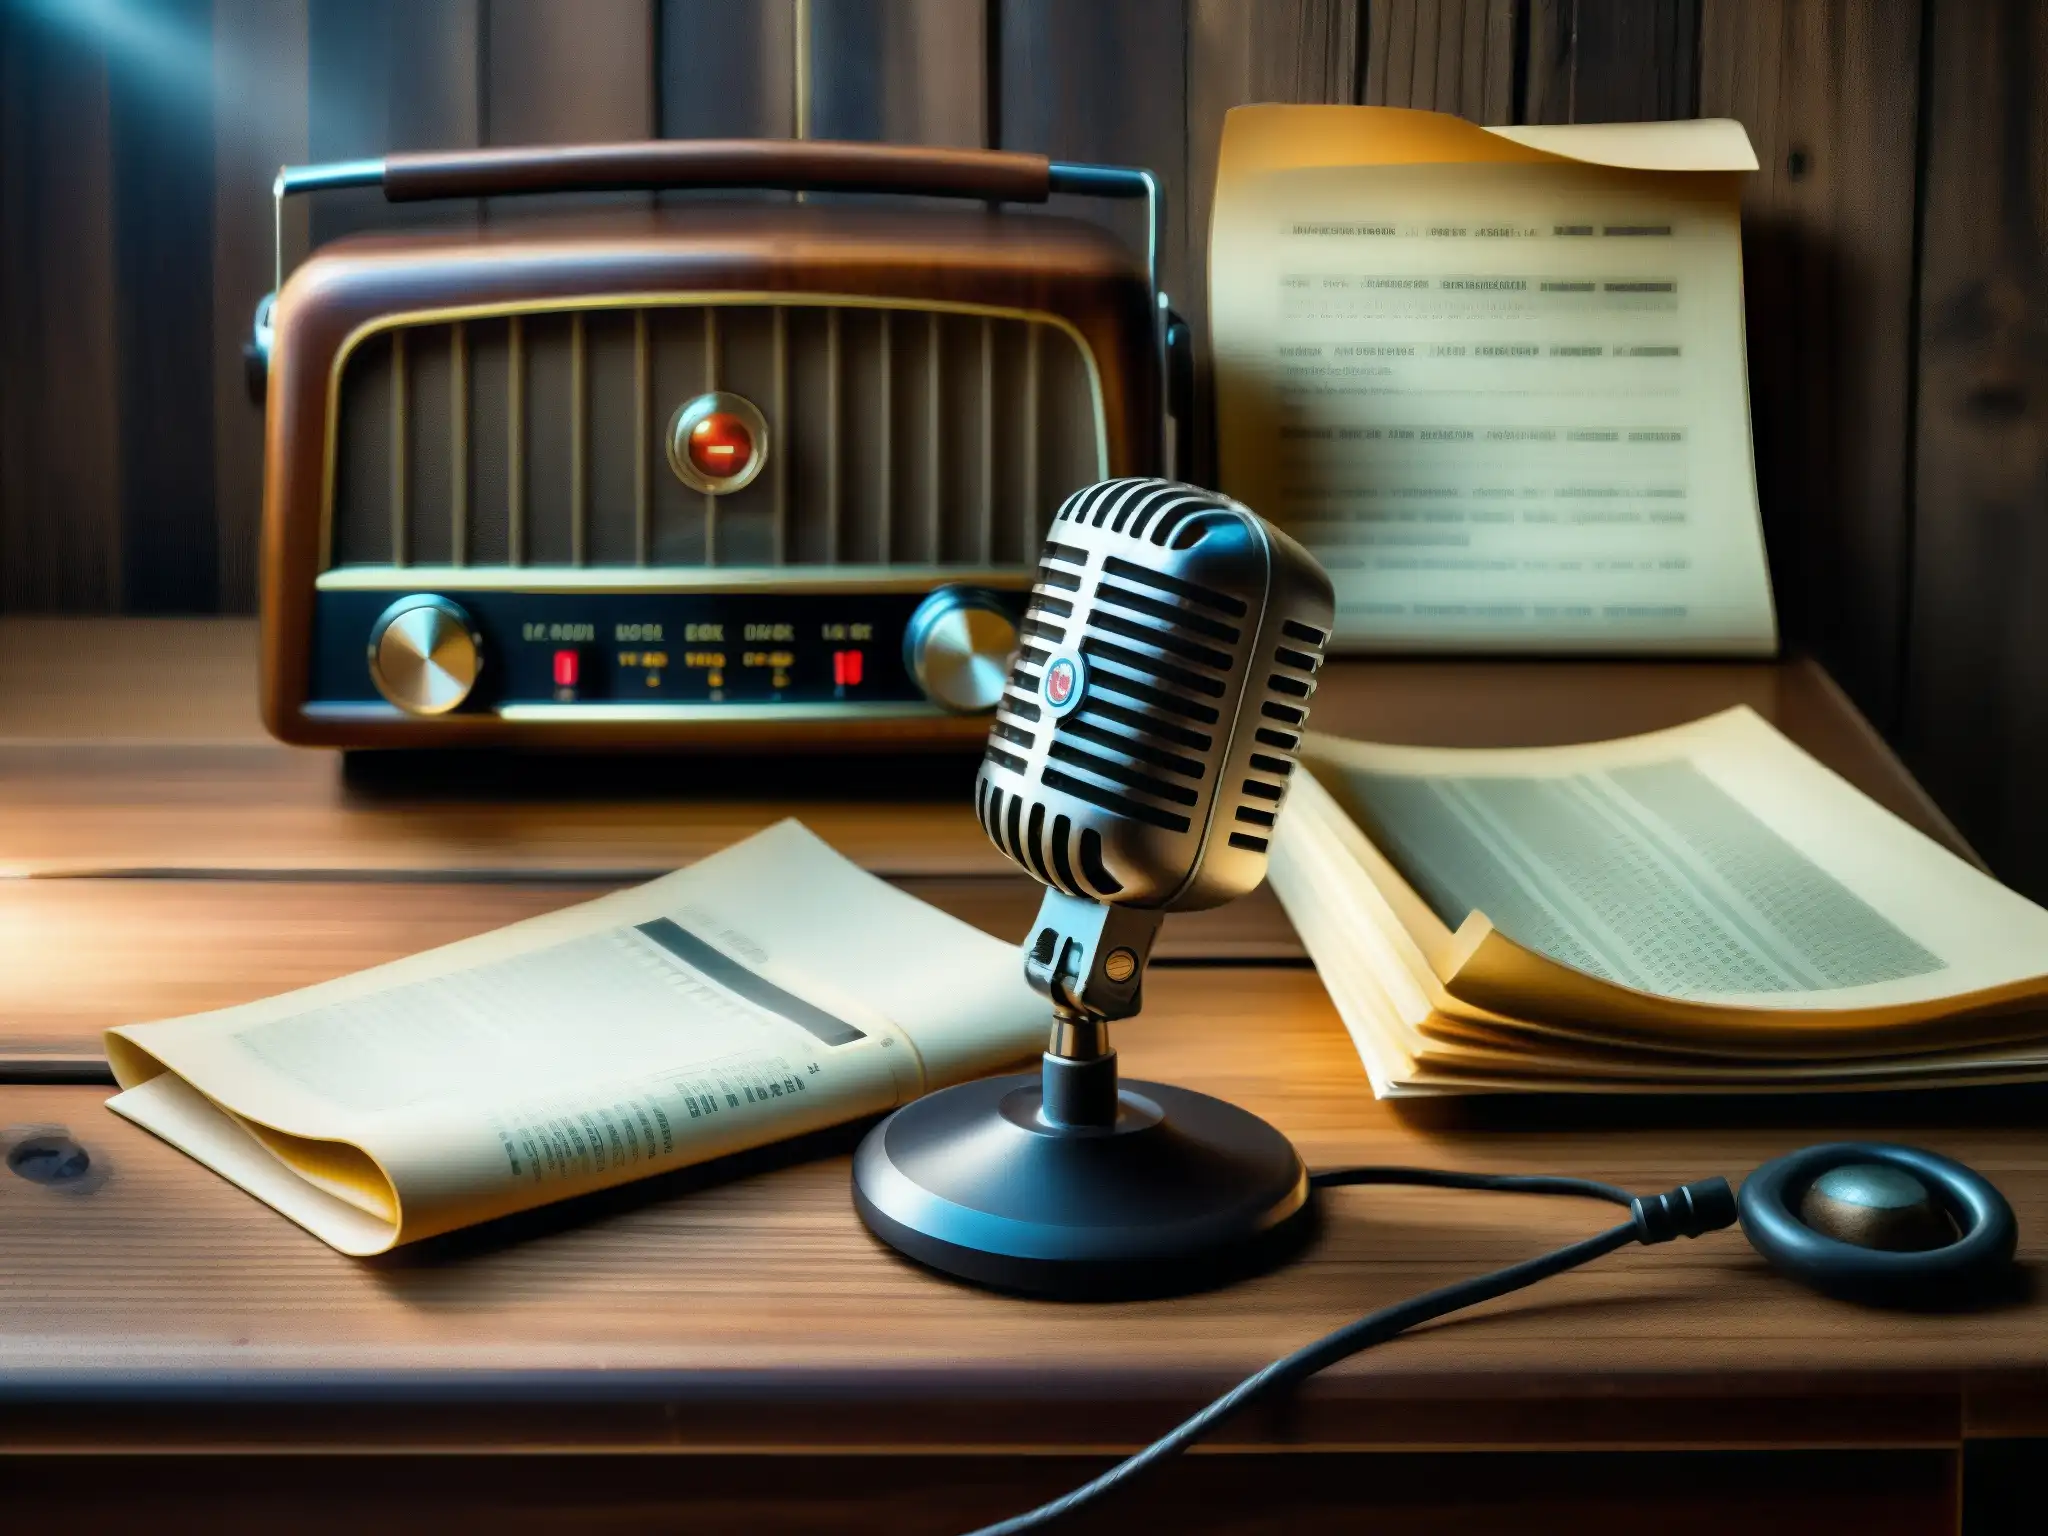 Un micrófono antiguo descansa en un escritorio de madera con papeles dispersos, mientras una radio vintage emite estática